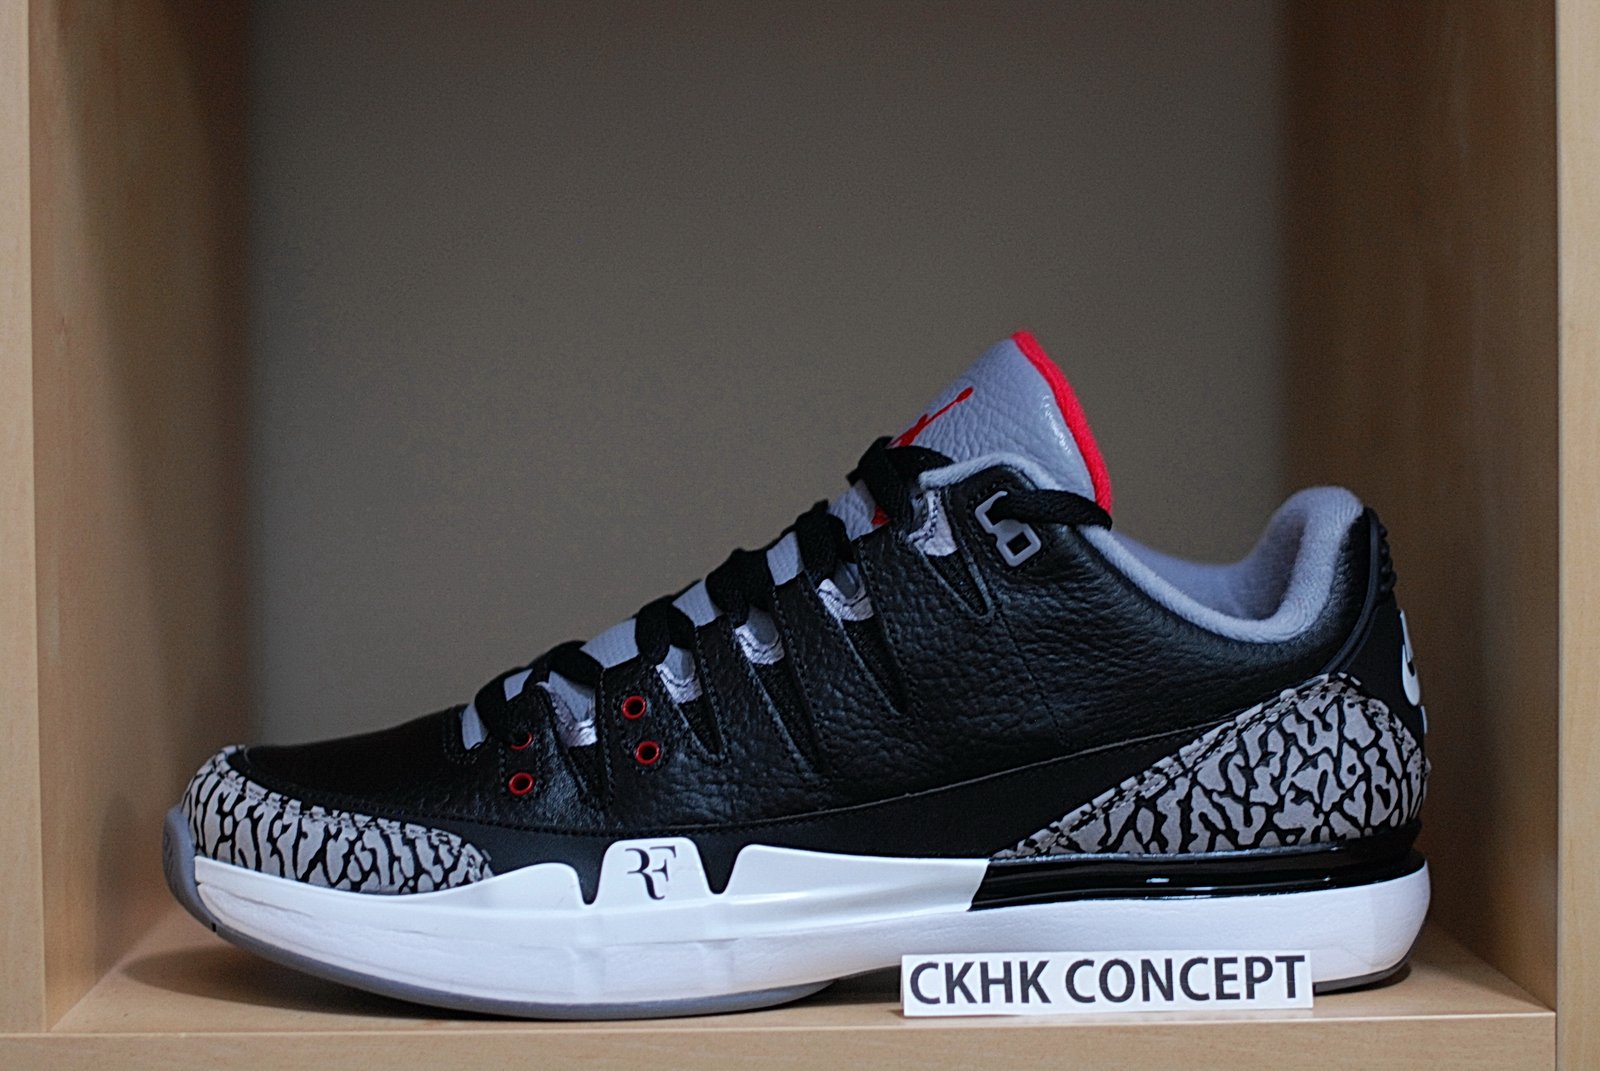 Nike Zoom Vapor AJ3 - RF x Jordan - Black Cement / CKHK Concept